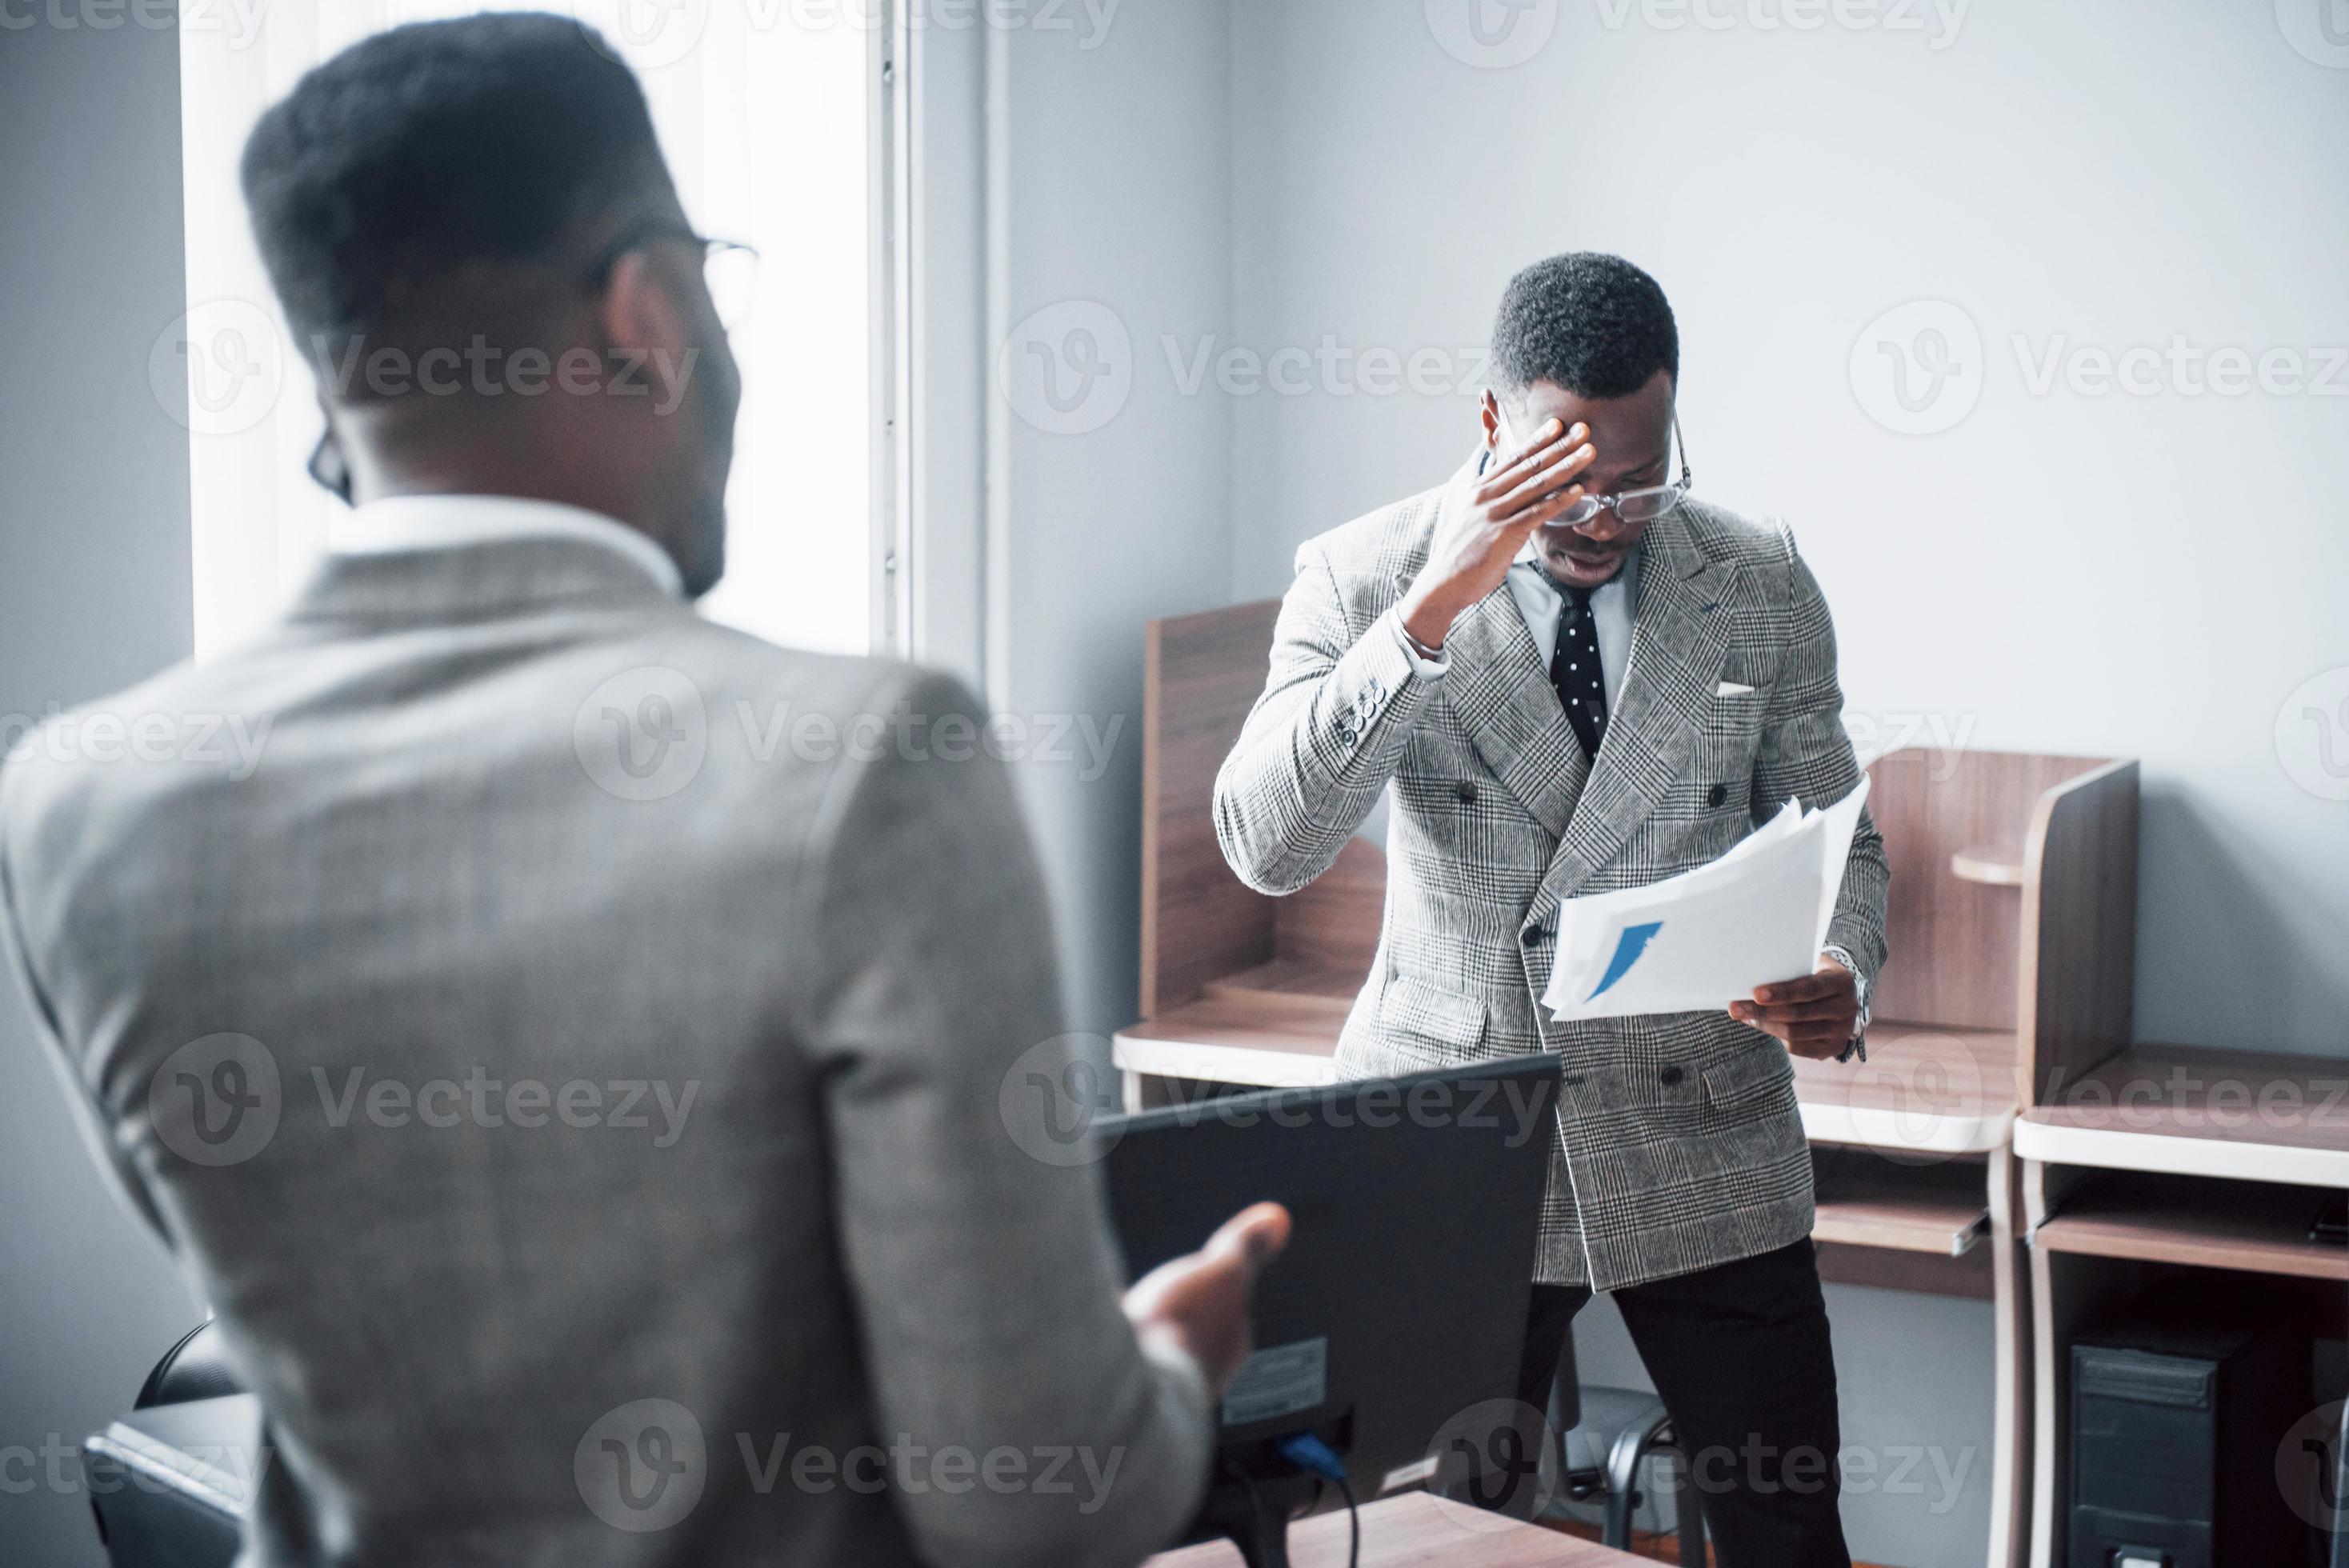 moderne zakenman op het werk. twee zelfverzekerde zakenmensen in formele kleding die iets bespreken terwijl een van hen naar de documenten kijkt en de tweede een belangrijk telefoontje foto